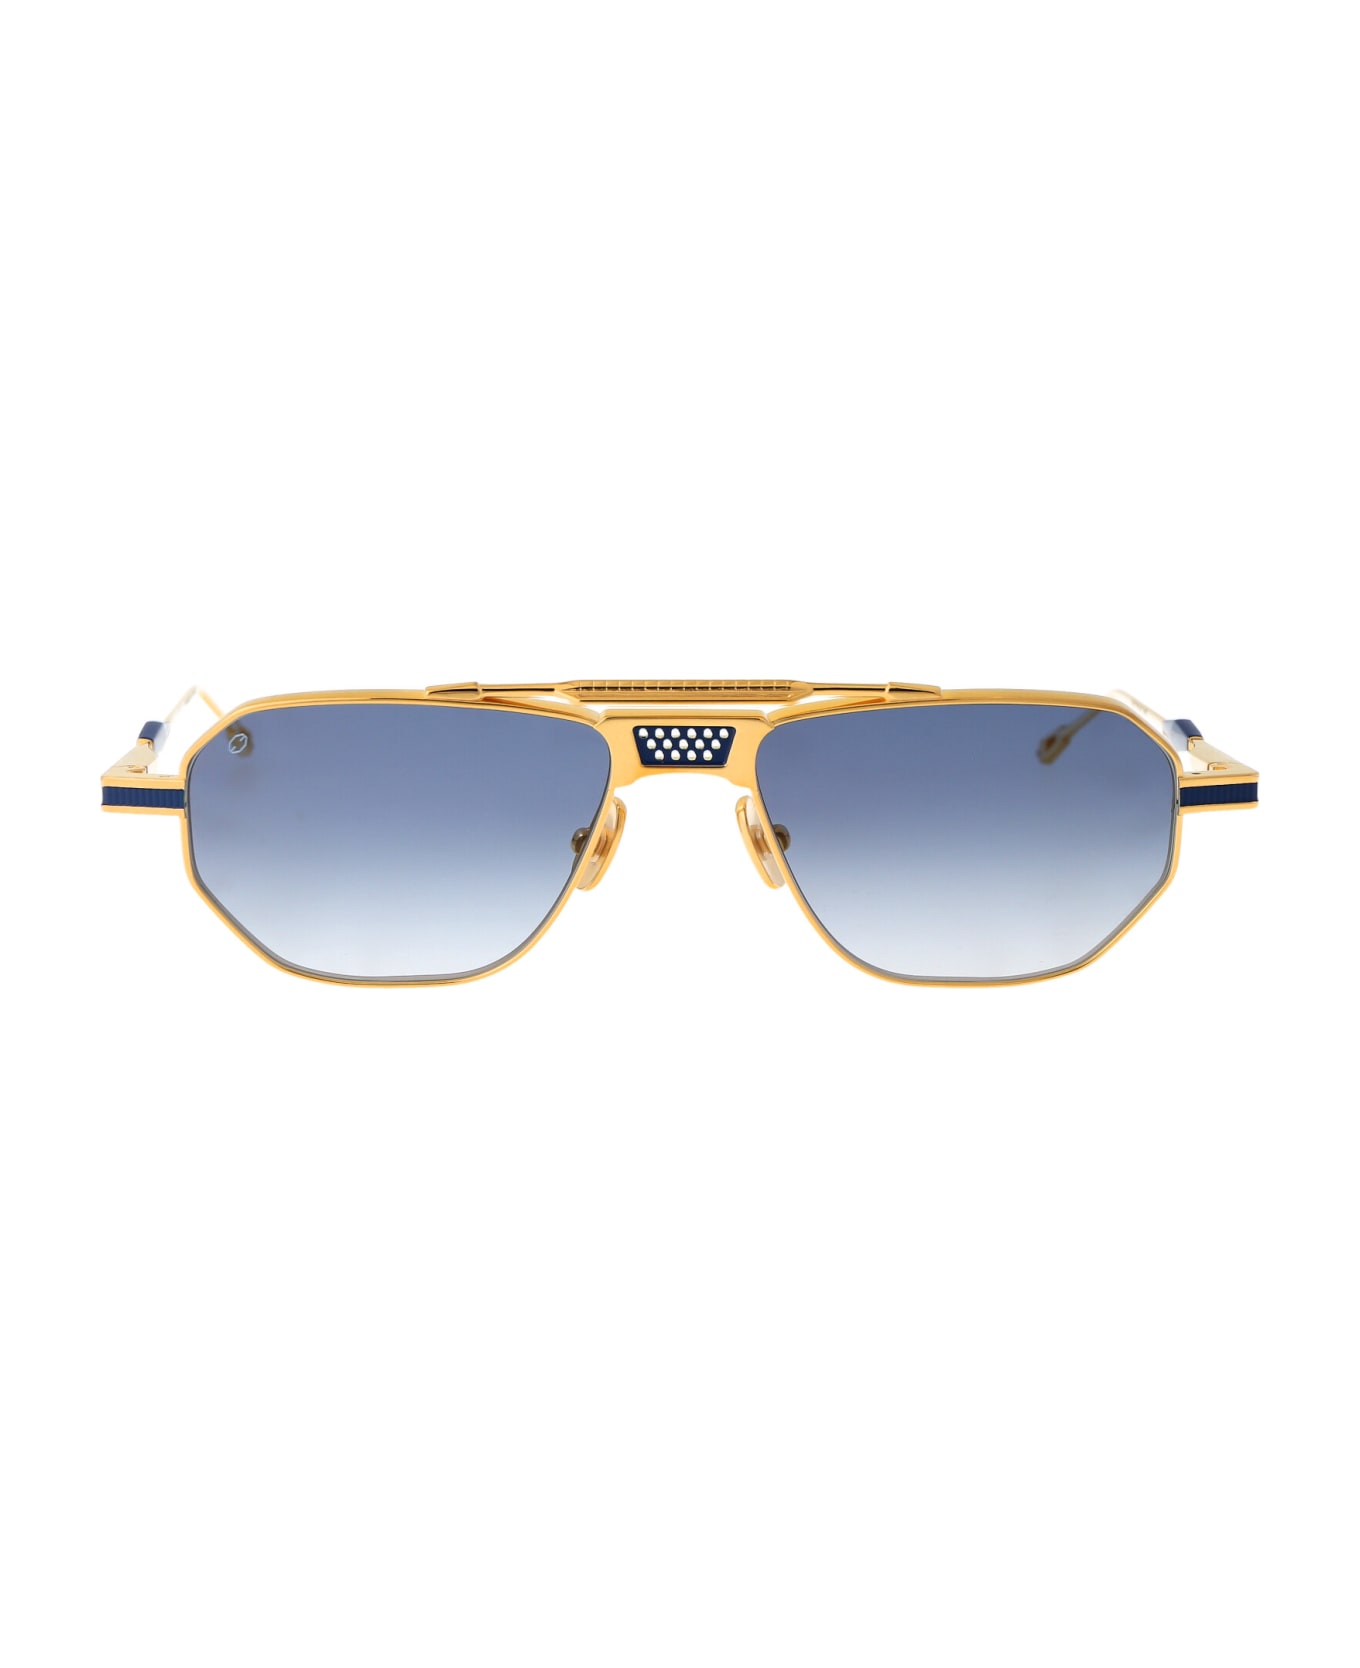 T Henri Longtail Sunglasses - L'OR BLEU サングラス